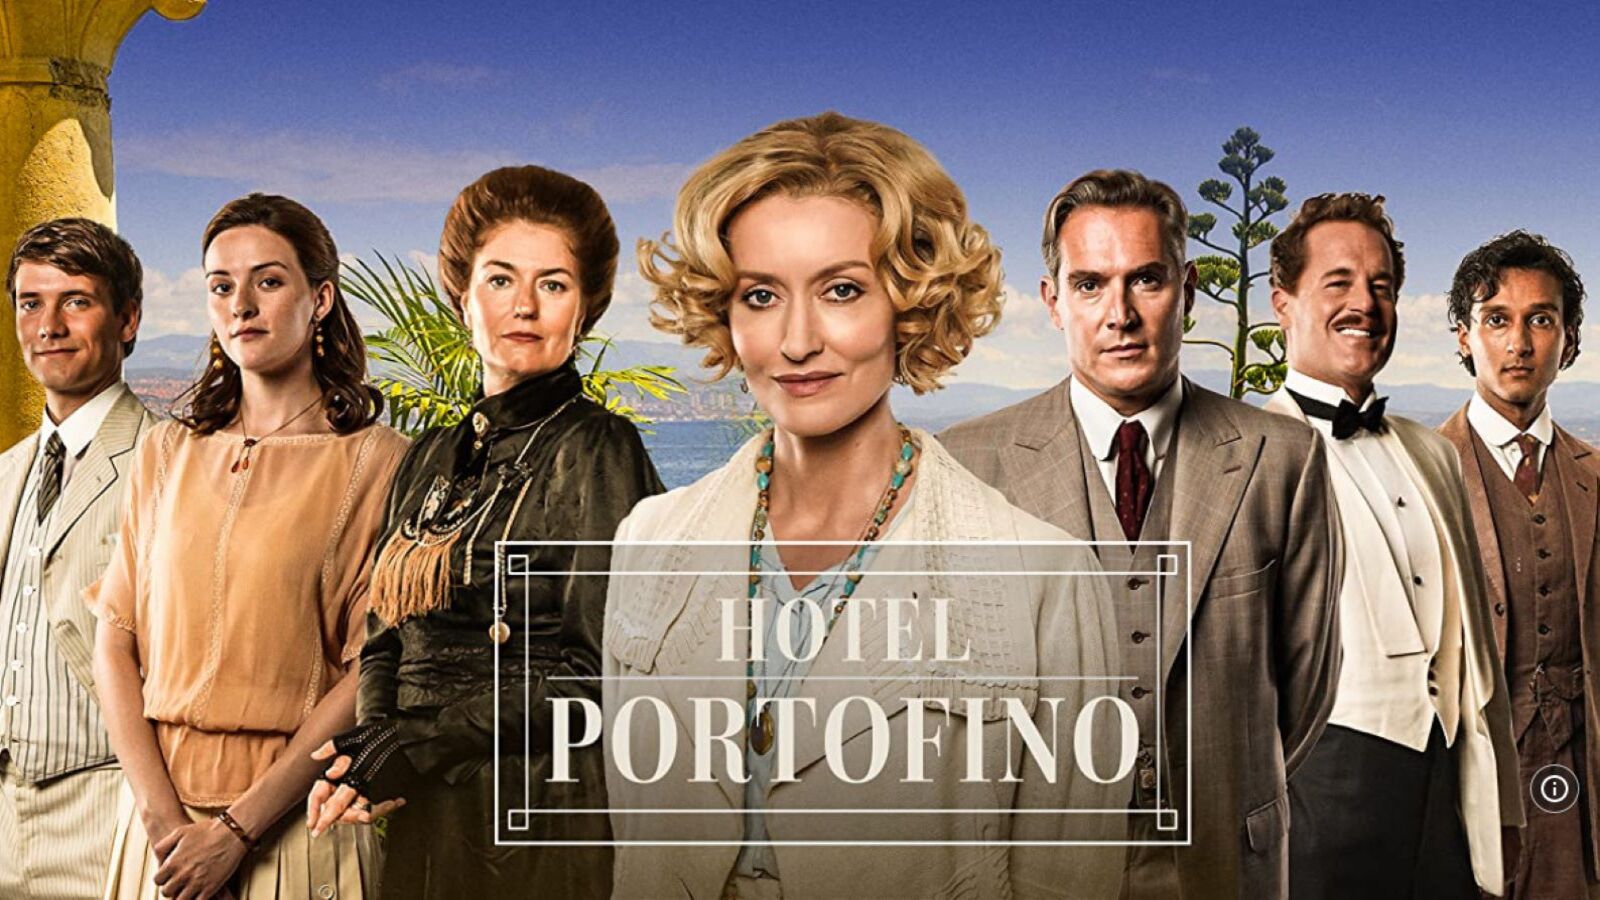 Hotel Portofino stasera su Rai 1, trama e cast delle prime puntate della serie televisiva